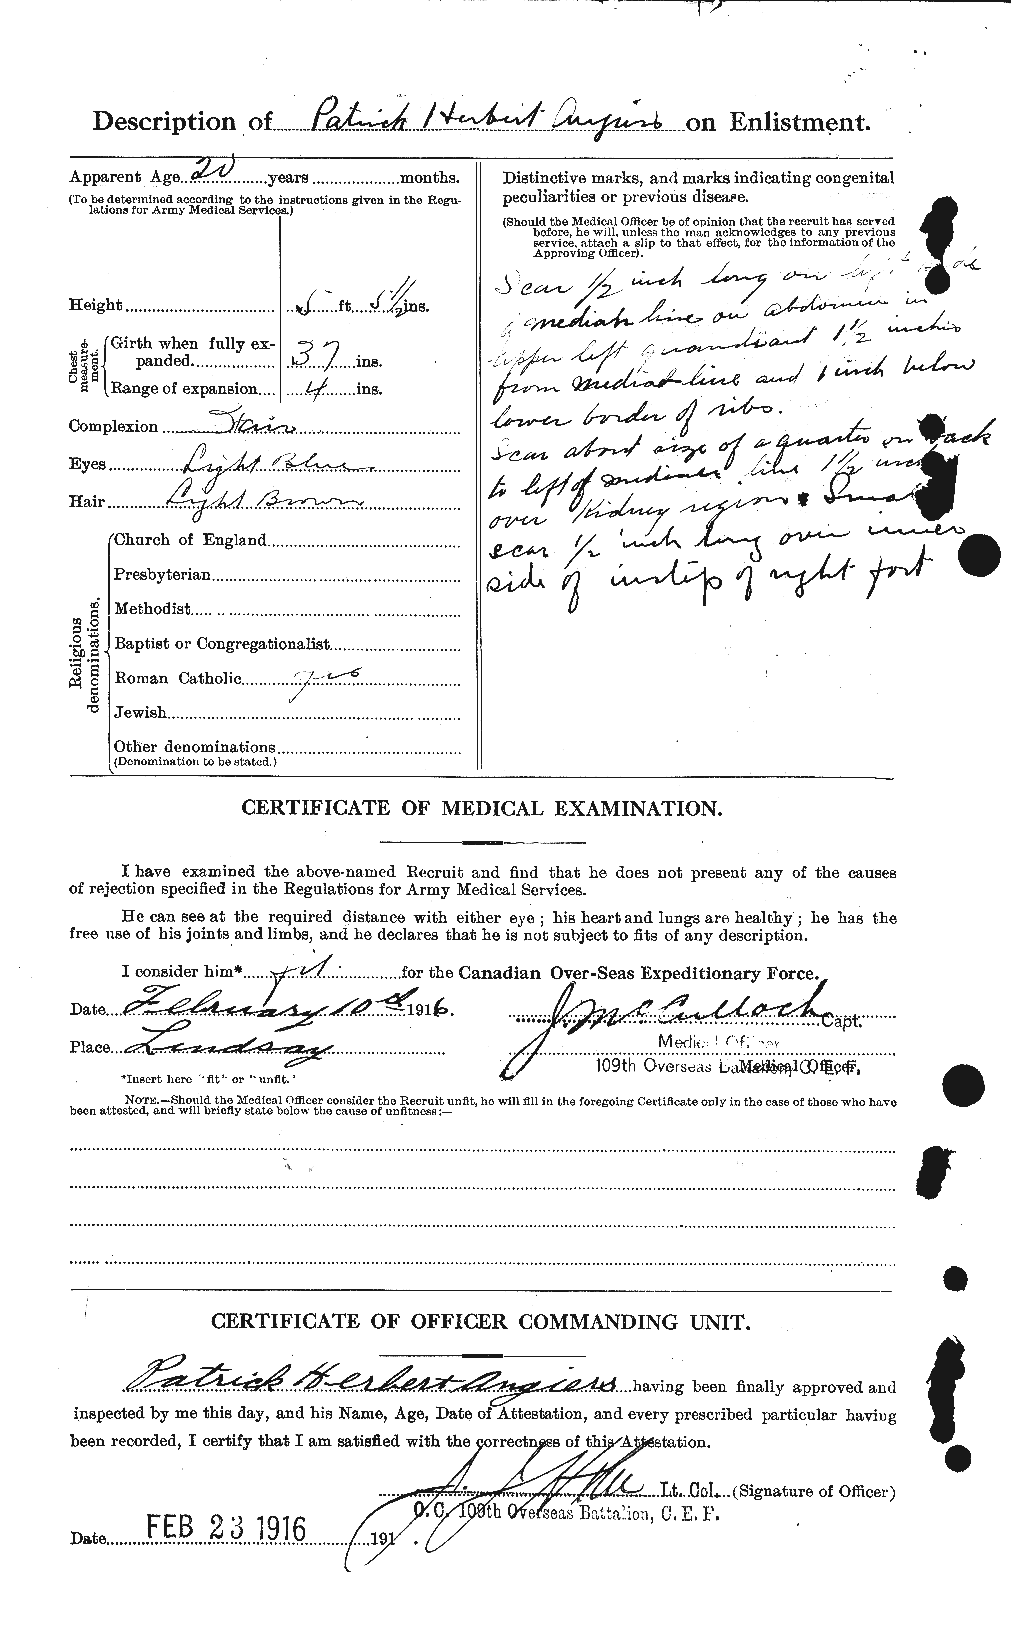 Dossiers du Personnel de la Première Guerre mondiale - CEC 209177b